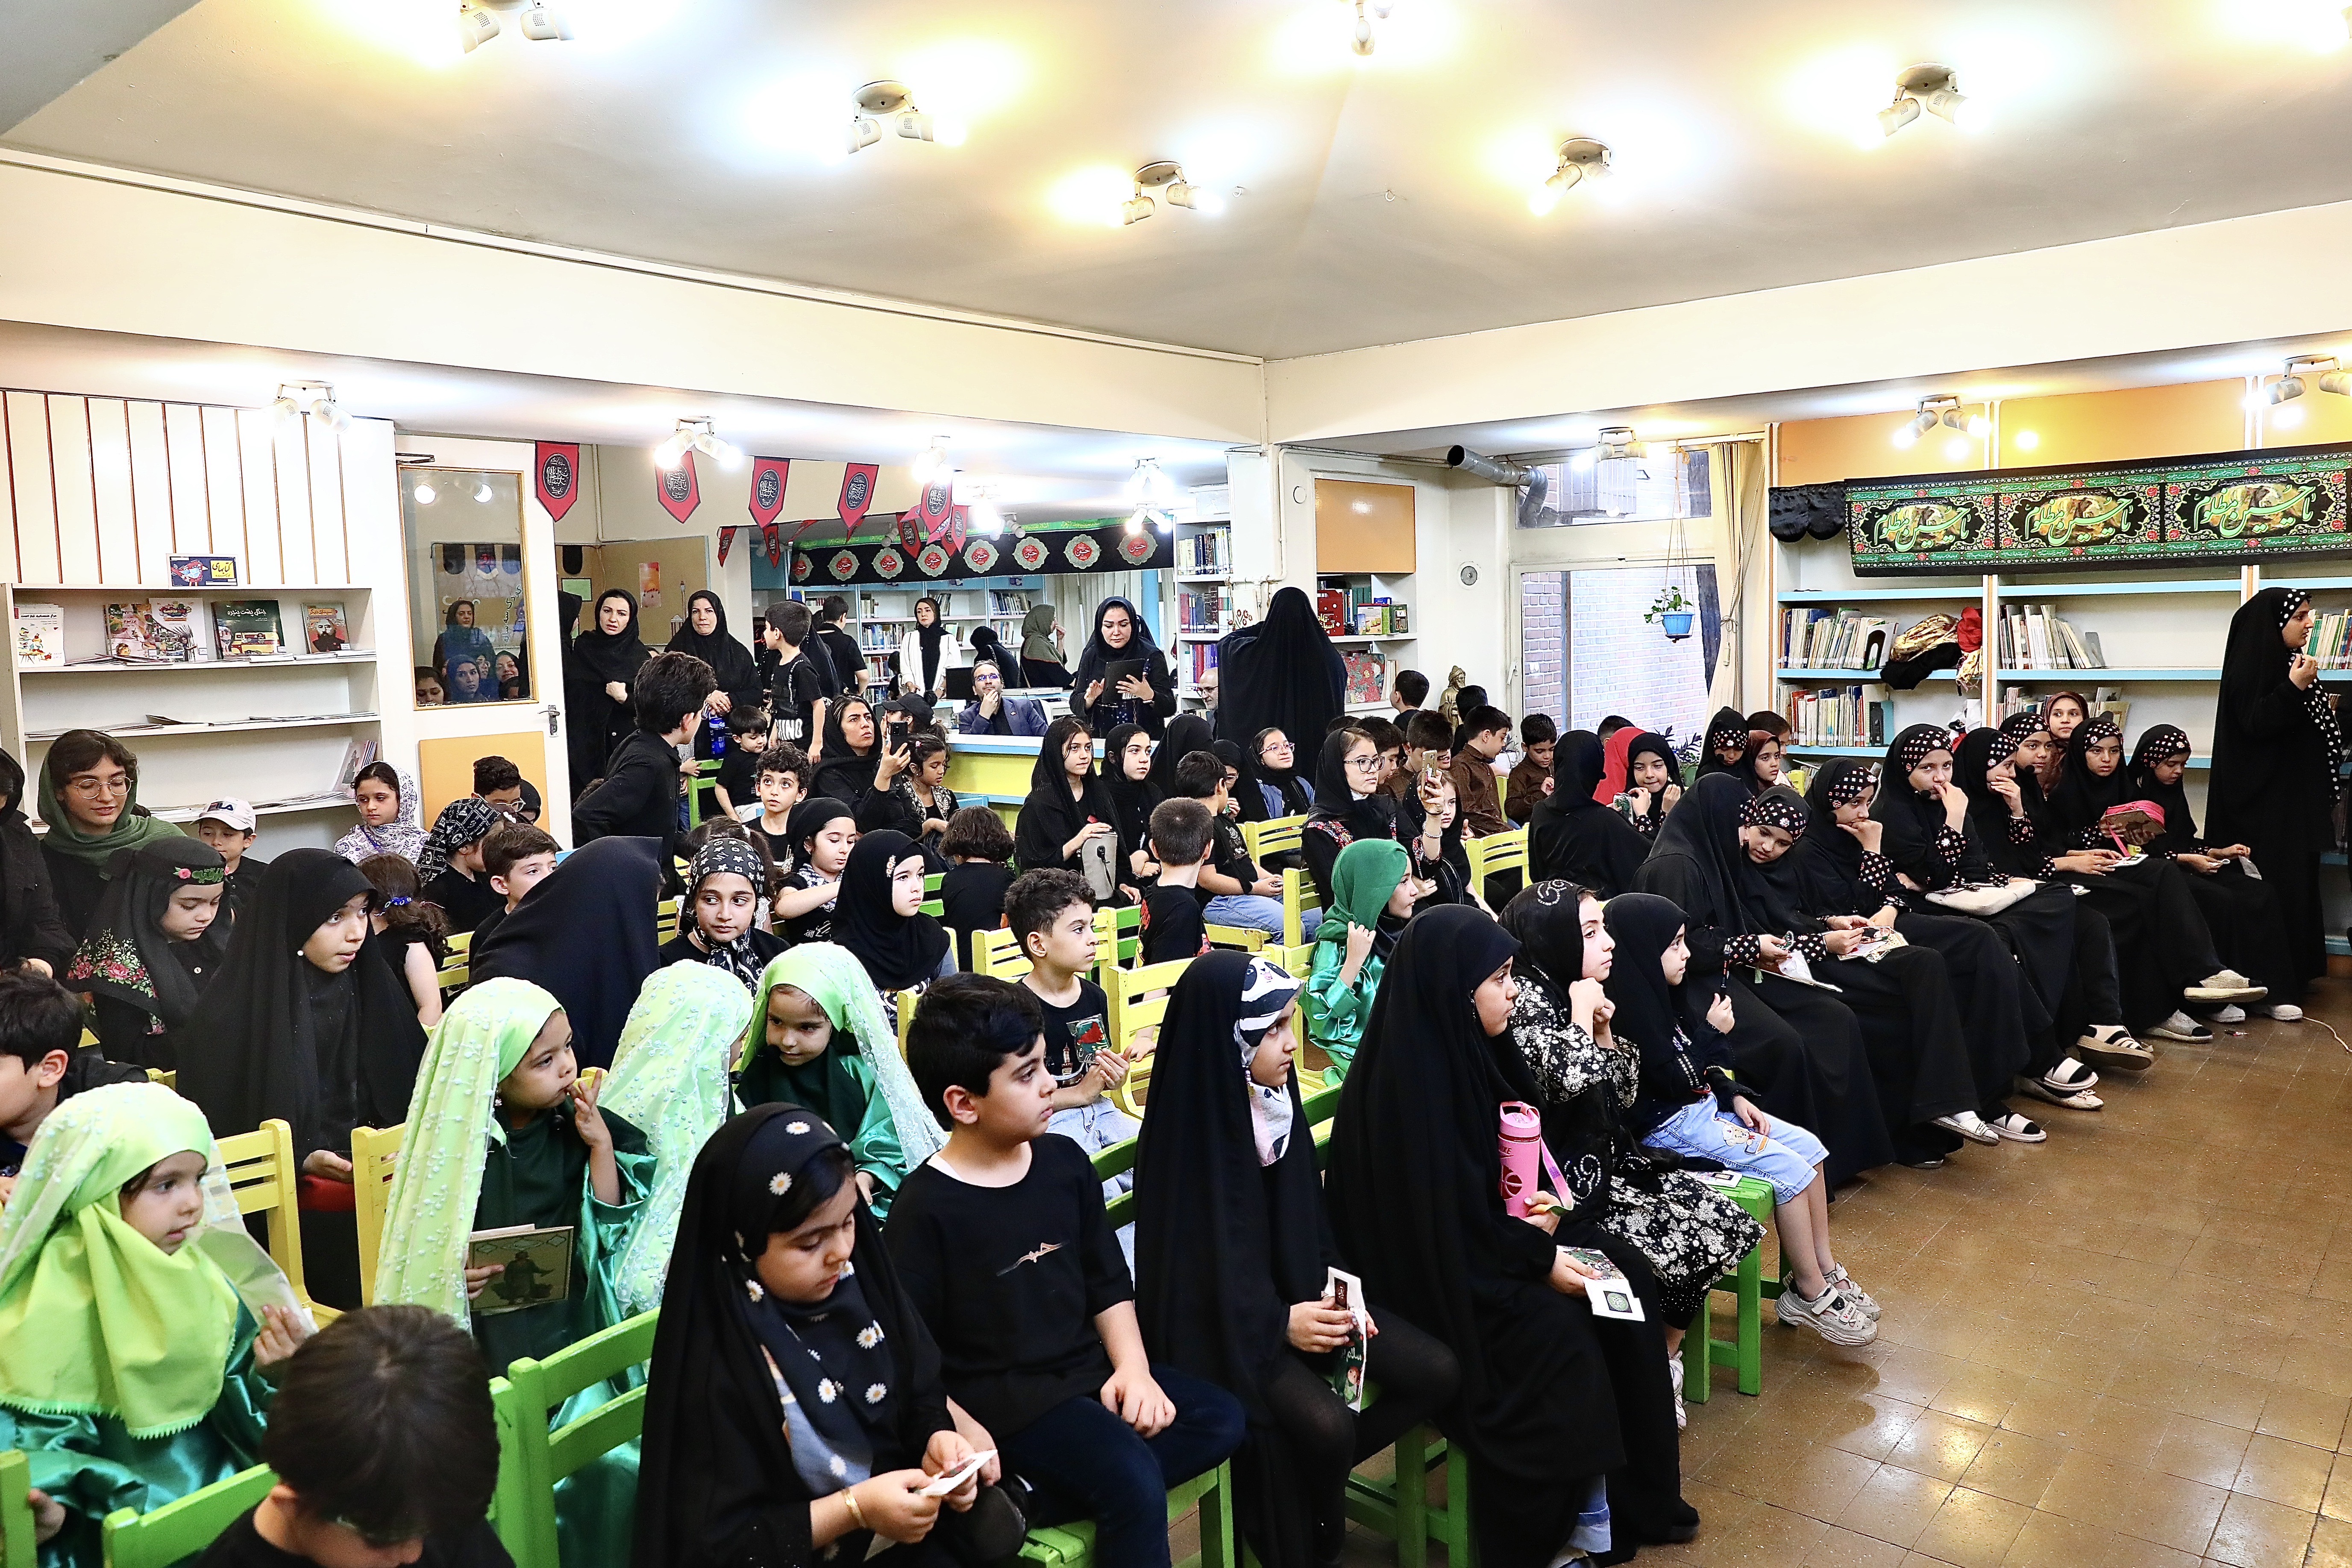 میهمانان کوچک امام حسین(ع) در کانون شماره ۲۲ تهران گردهم آمدند